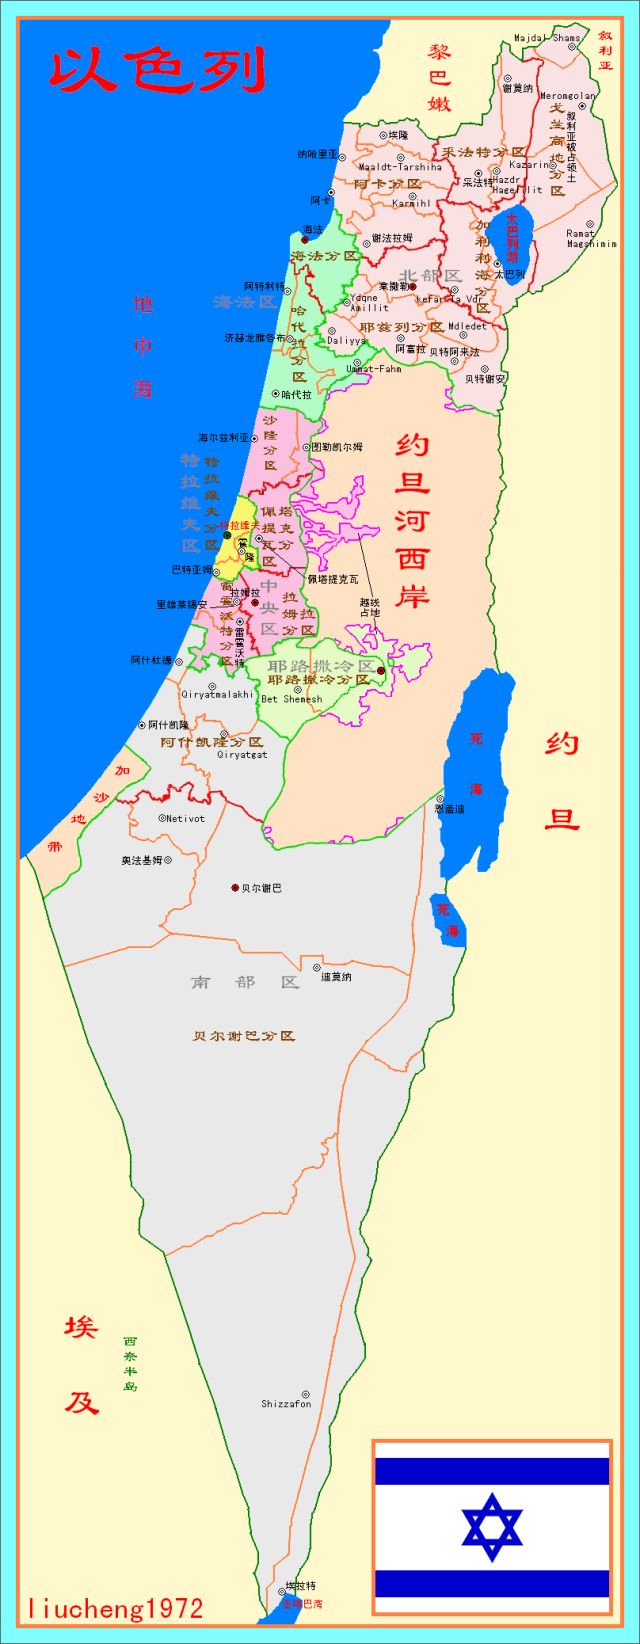 1967年第三次中东战争爆发,以色列闪电般占领了戈兰高地的部分地区并